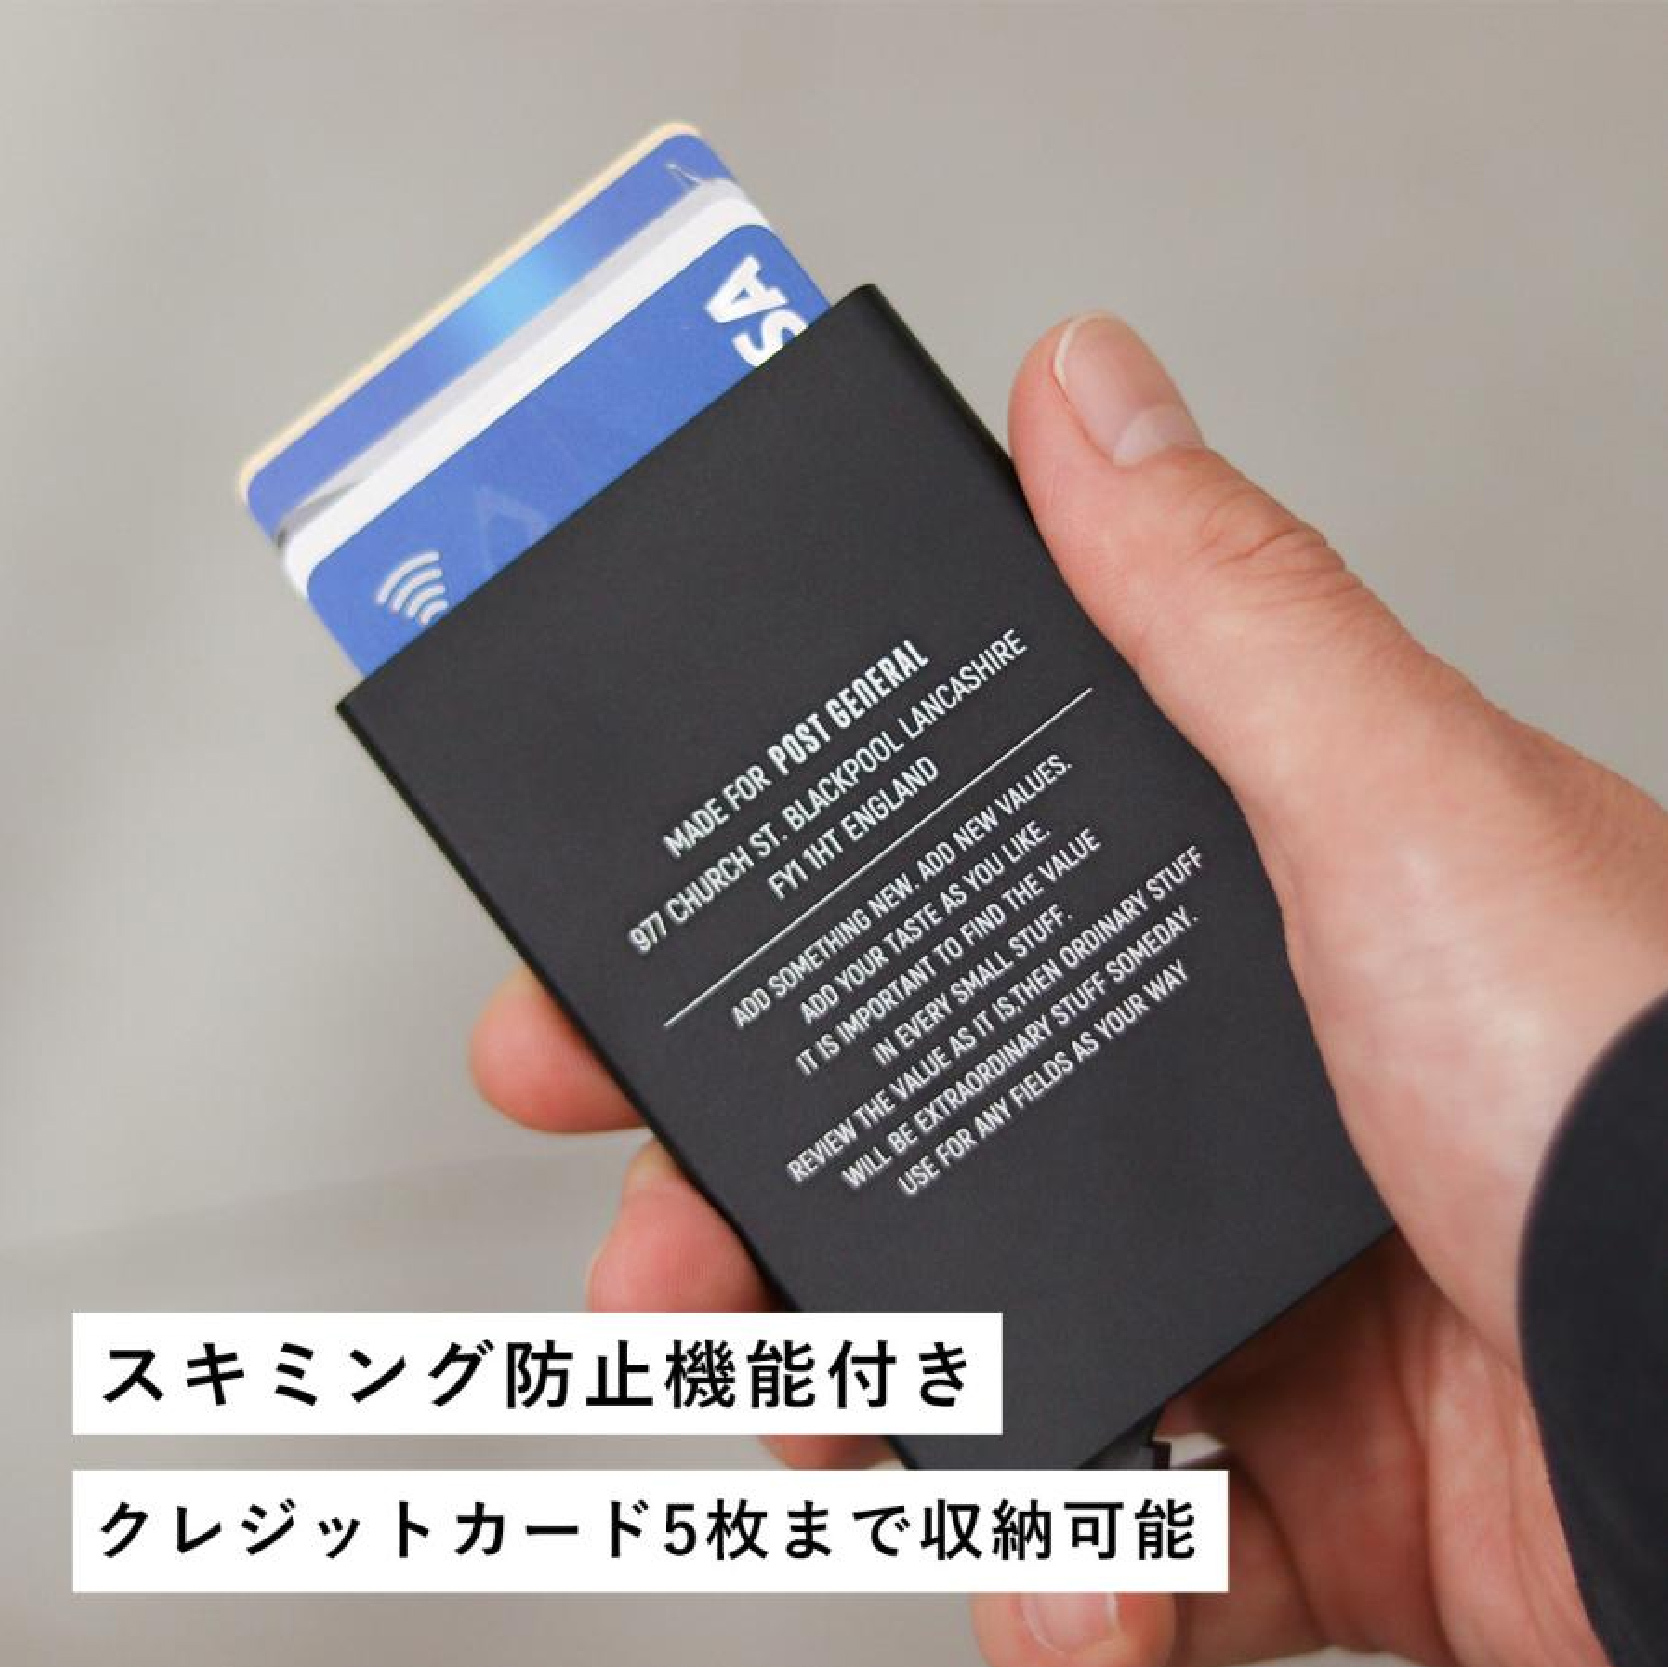 滑出式自動卡夾玄黑/銀灰【Post General】PG-98236-0009/10 CARD CASE 愛